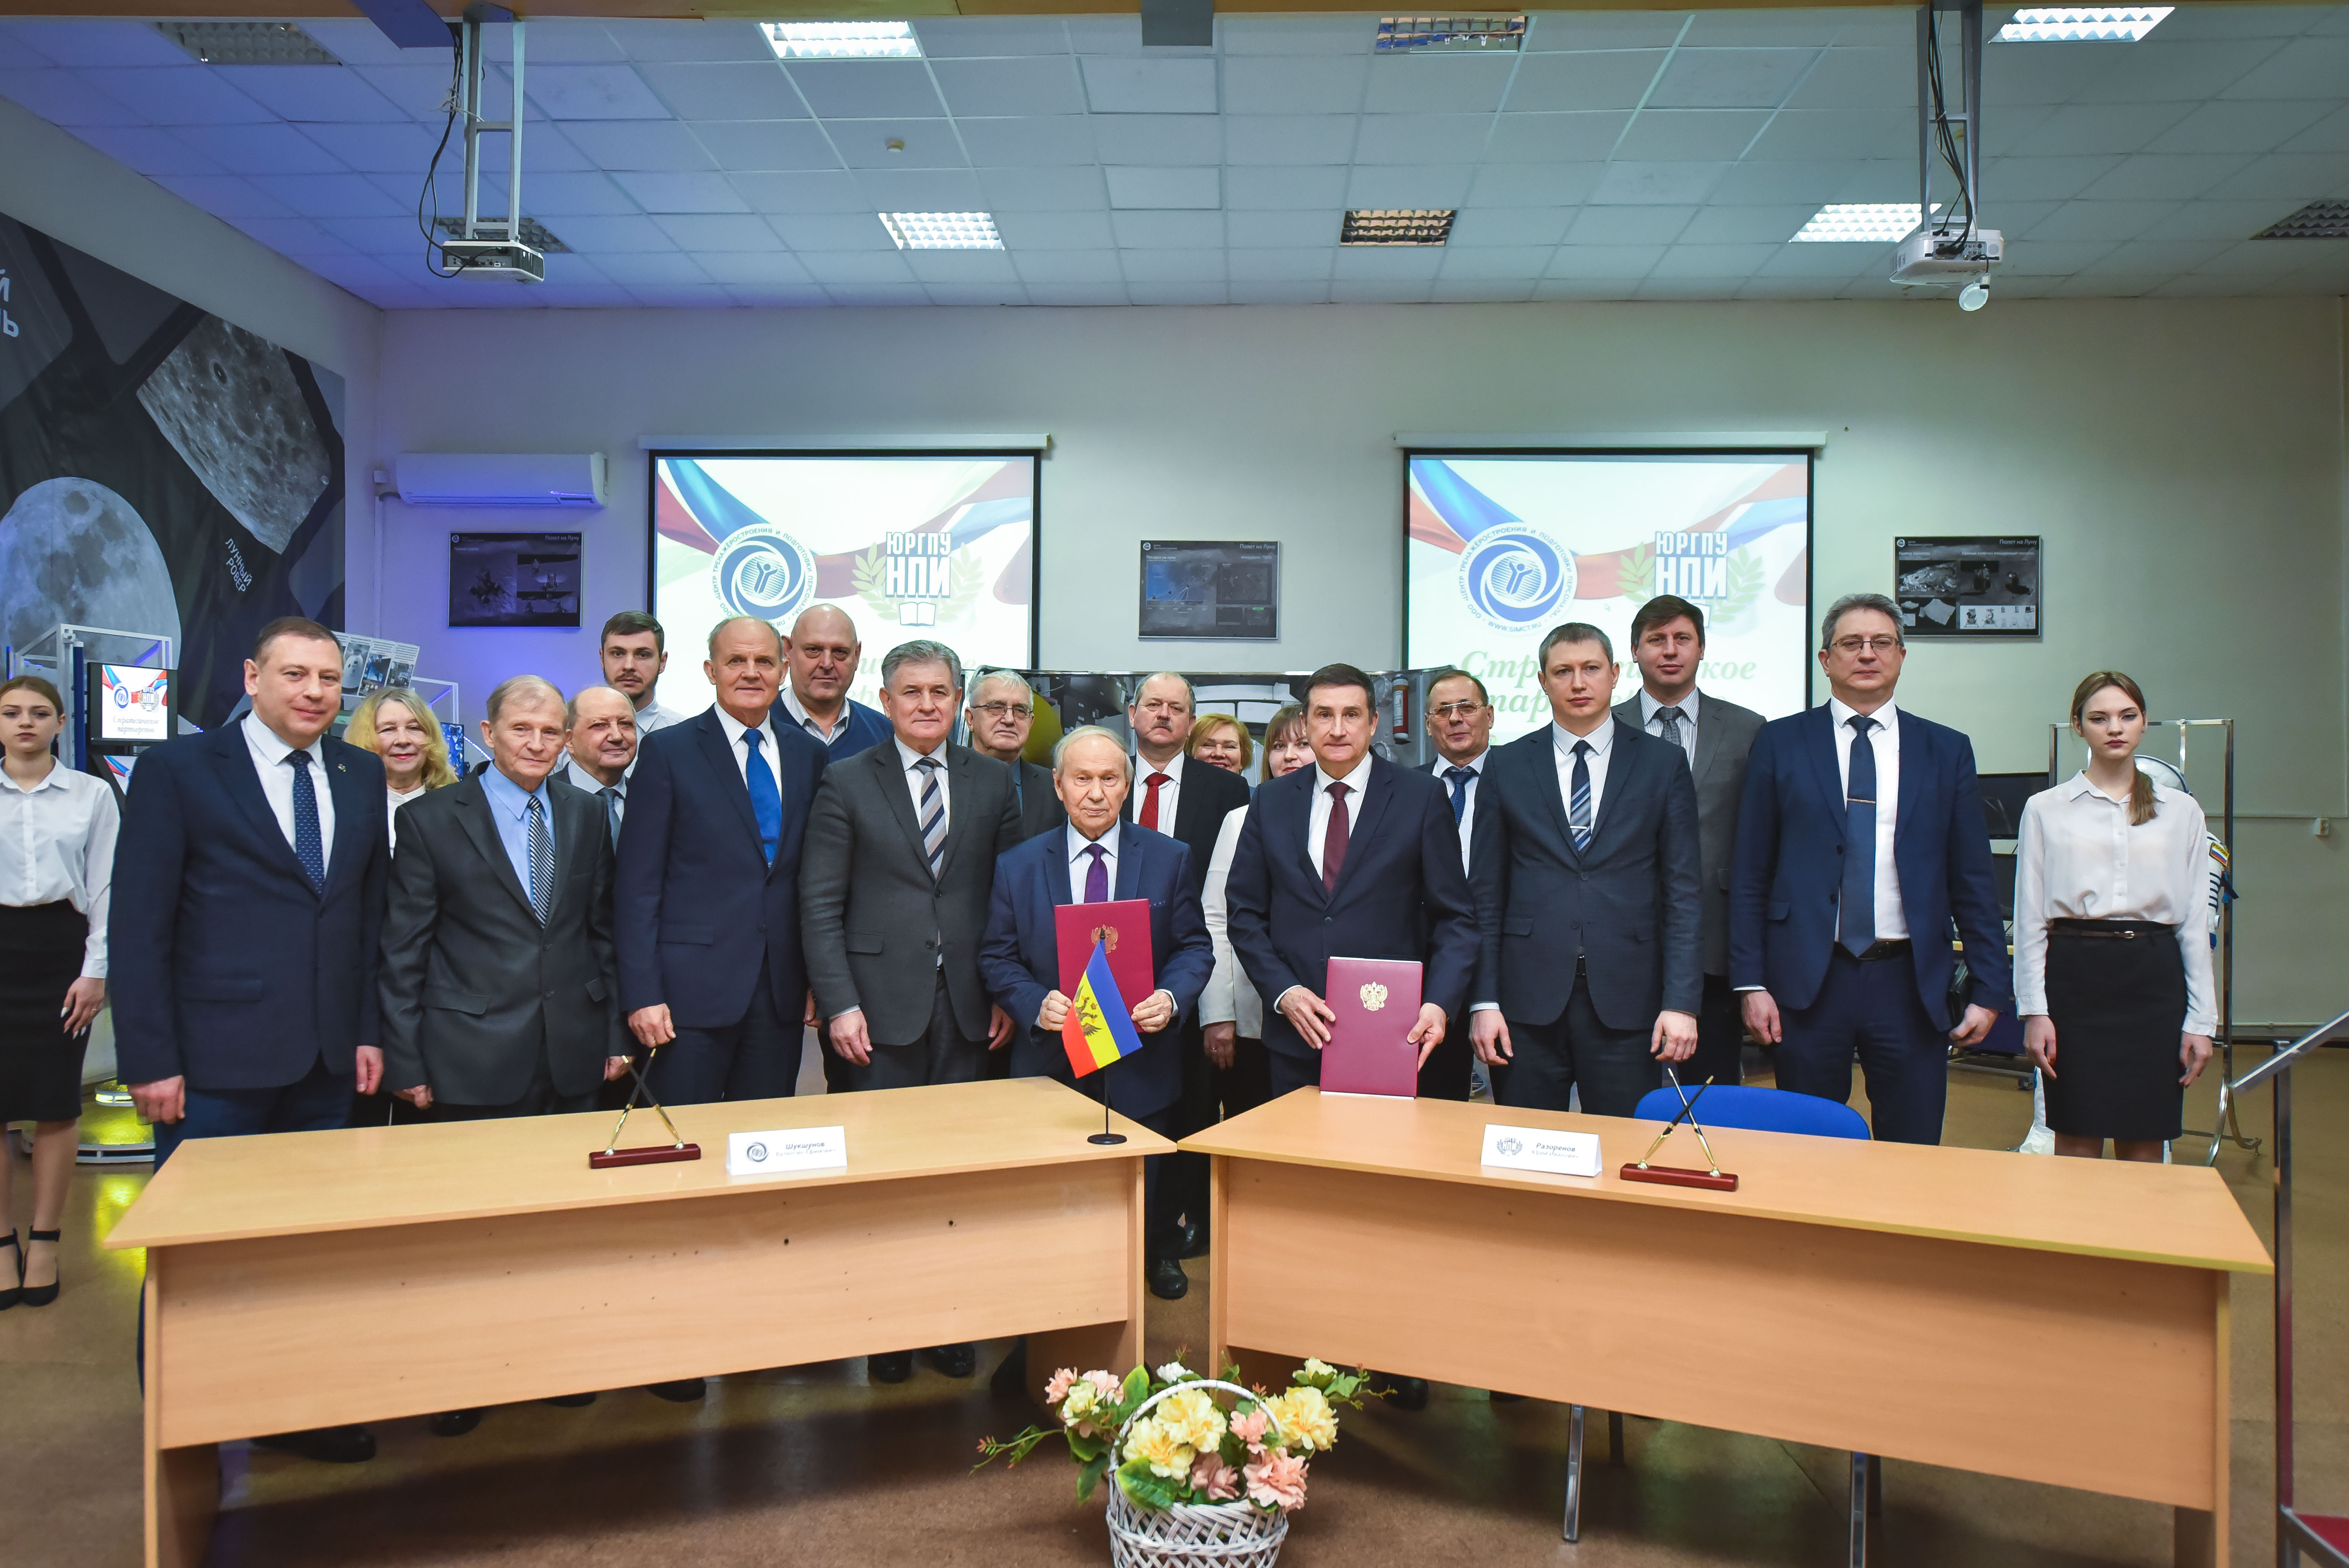 Центр тренажеростроения и ЮРГПУ (НПИ) подписали соглашение о стратегическом партнерстве